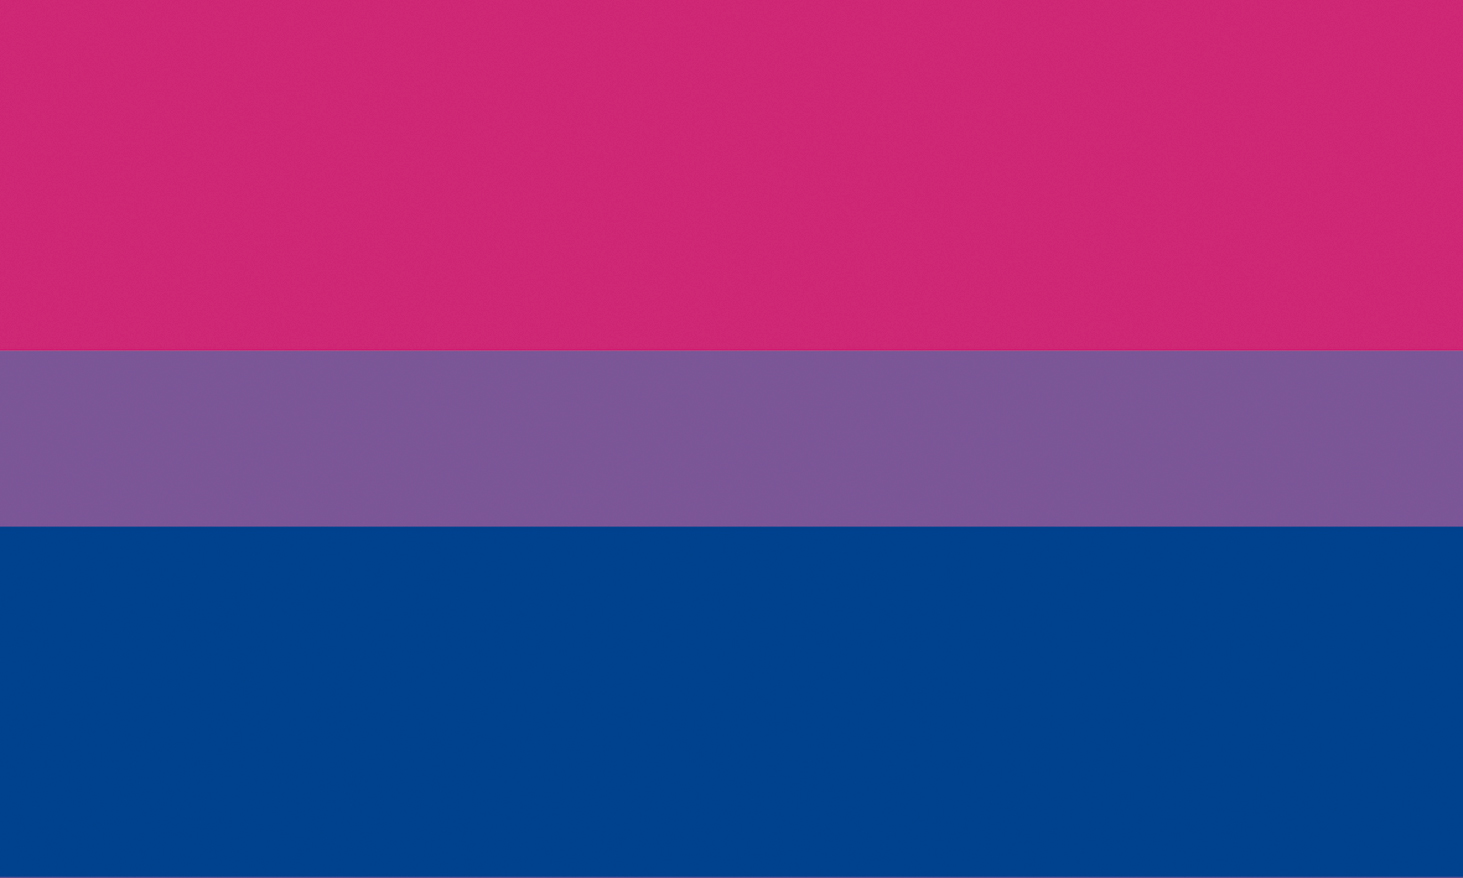 Bandeira bissexual